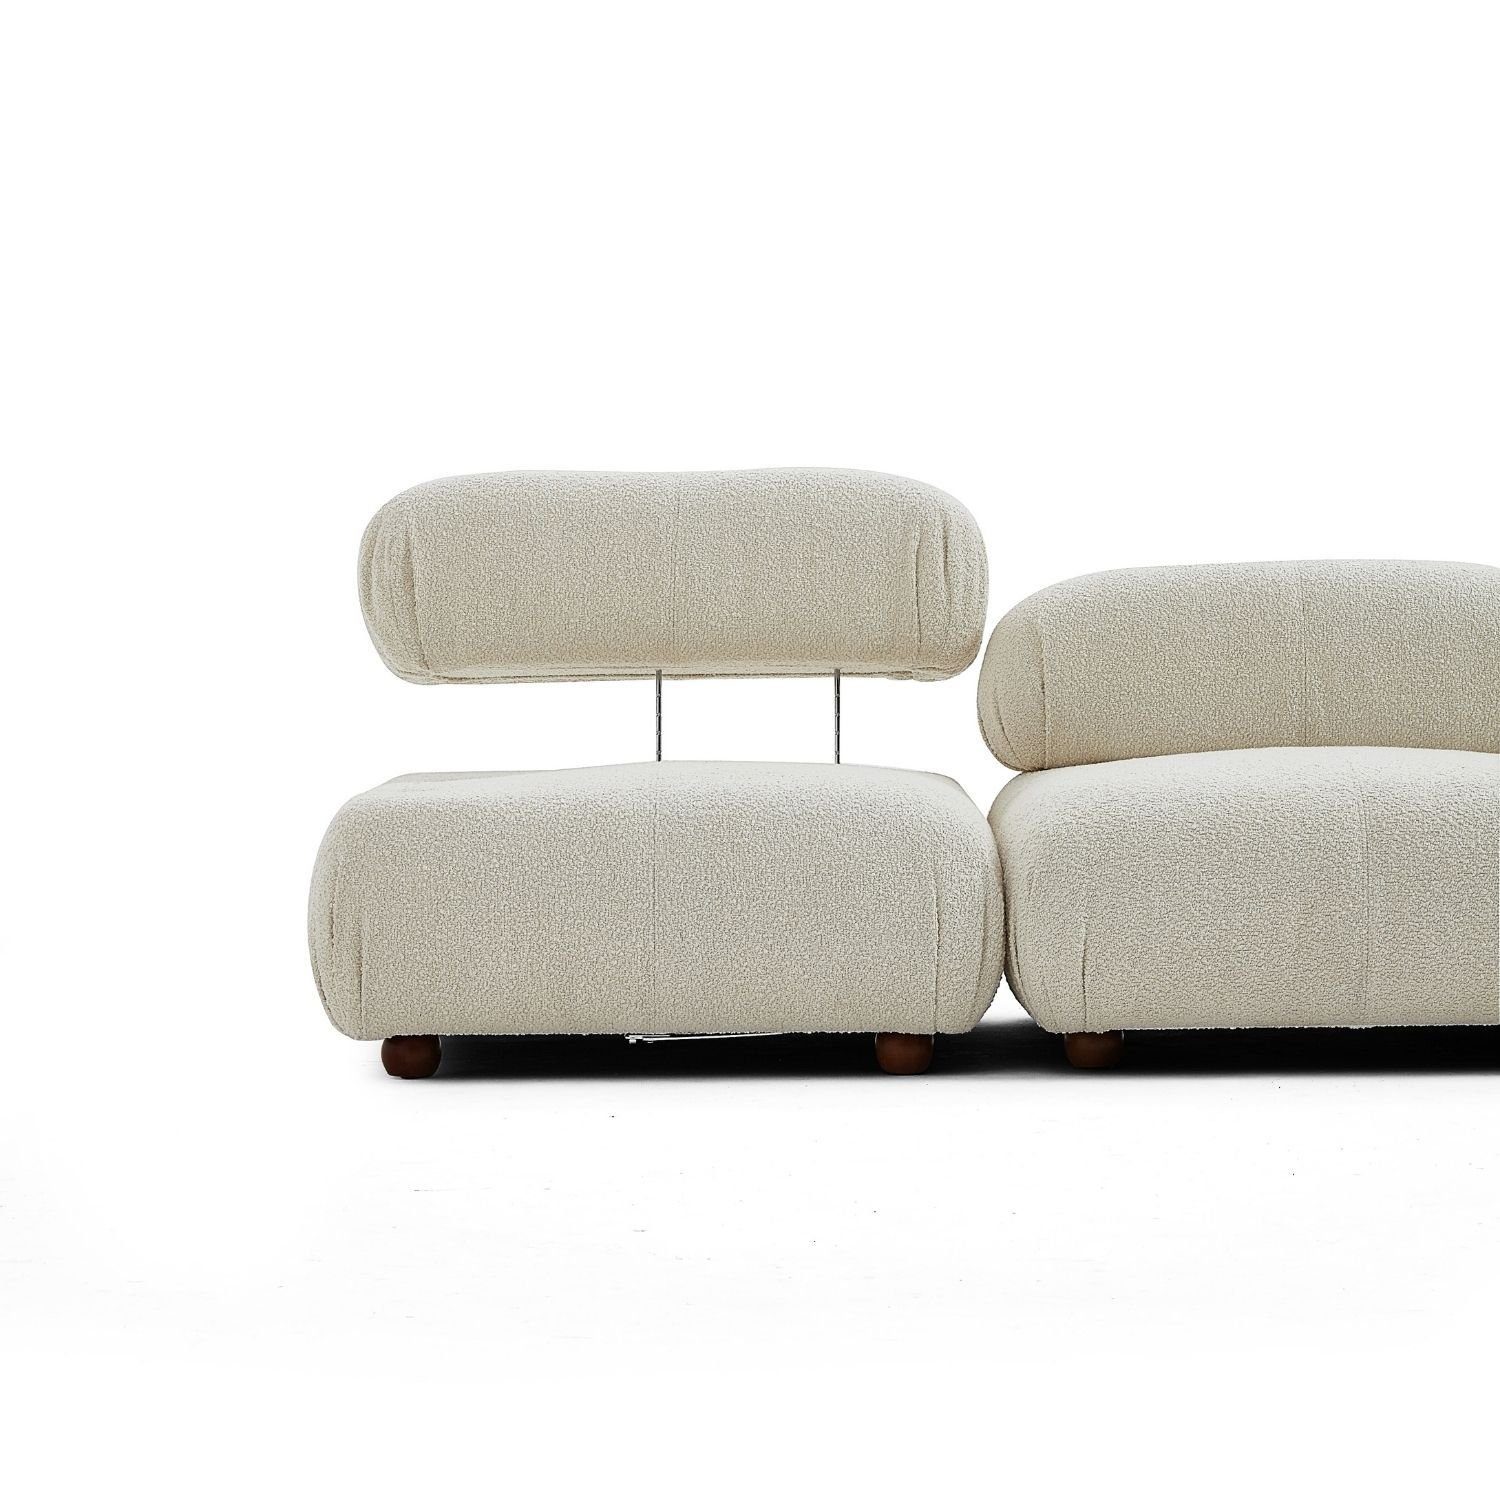 Komfortschaum Knuffiges Sitzmöbel Aufbau Touch Preis Gelb-Lieferung enthalten! im neueste Generation me Sofa und aus